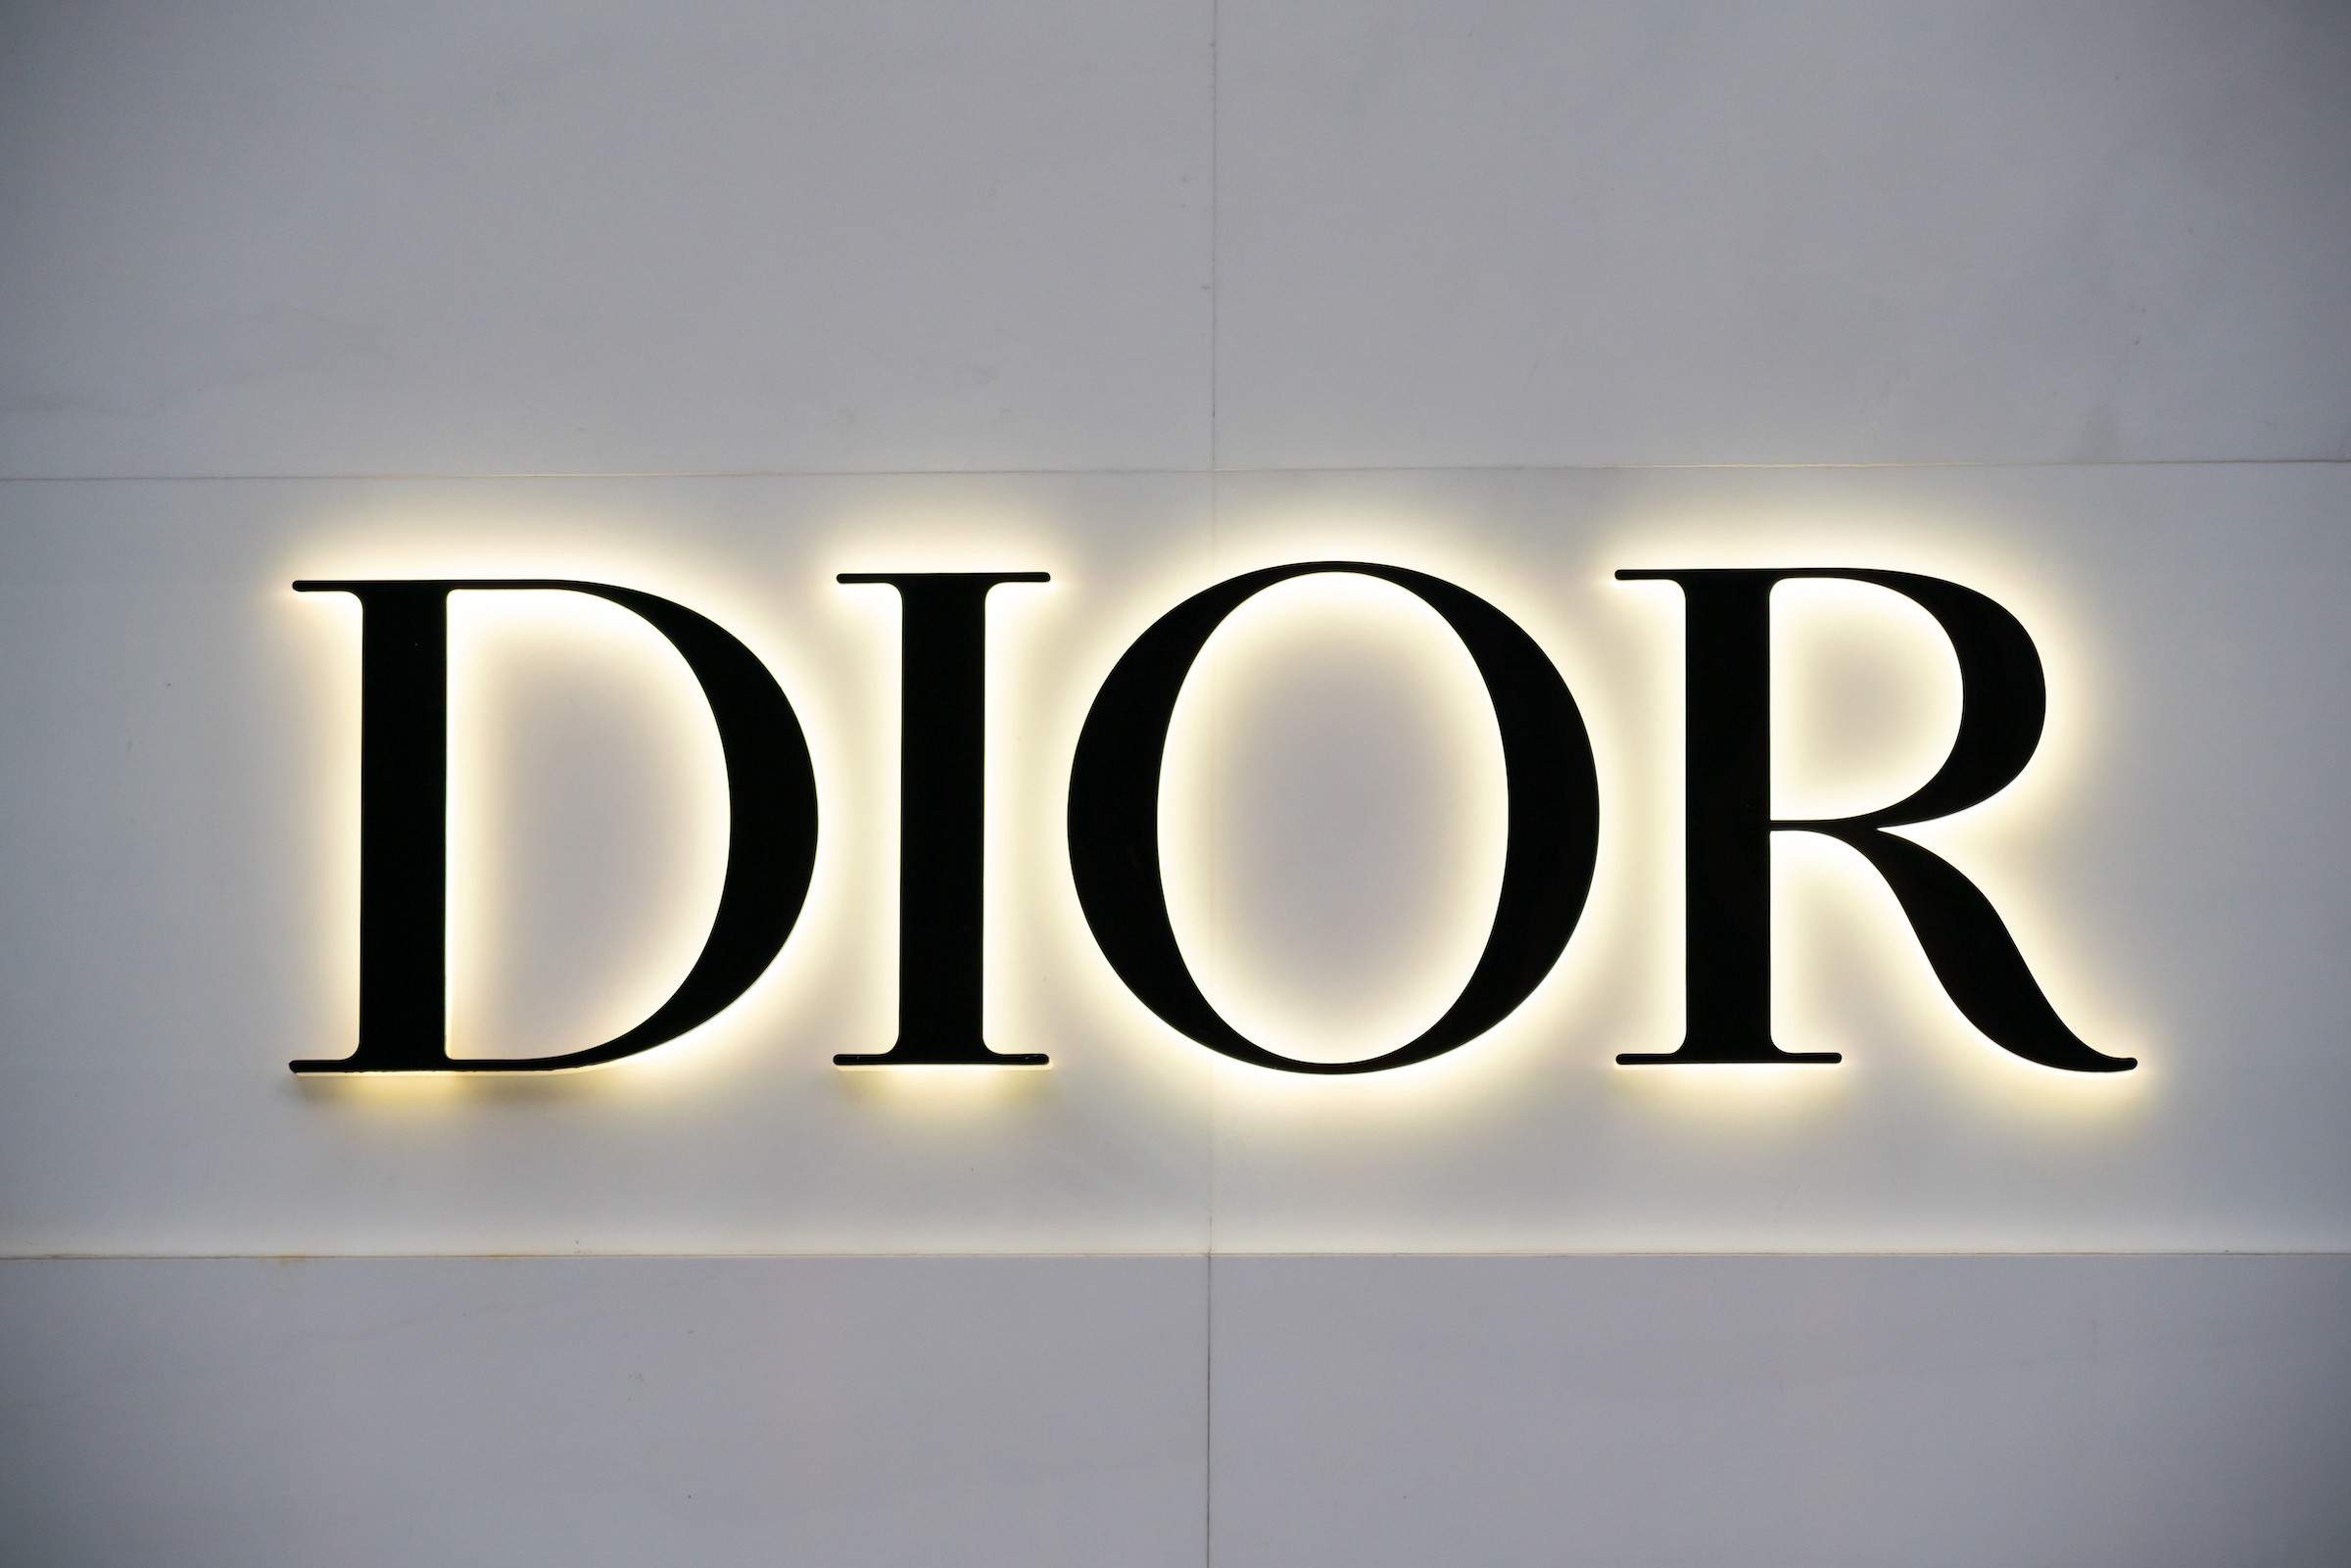 Dior không chỉ là thương hiệu thời trang nổi tiếng, mà còn là nhà thiết kế giày hàng đầu thế giới. Với những mẫu giày của Dior, bạn sẽ thấy sự phối hợp hoàn hảo giữa tinh tế và đẳng cấp của nhãn hiệu. Một vài hình nền trang trí từ khóa giày Dior sẽ khiến bạn phát cuồng với những mẫu giày đẹp nhất, độc đáo nhất và sang trọng nhất của Dior.